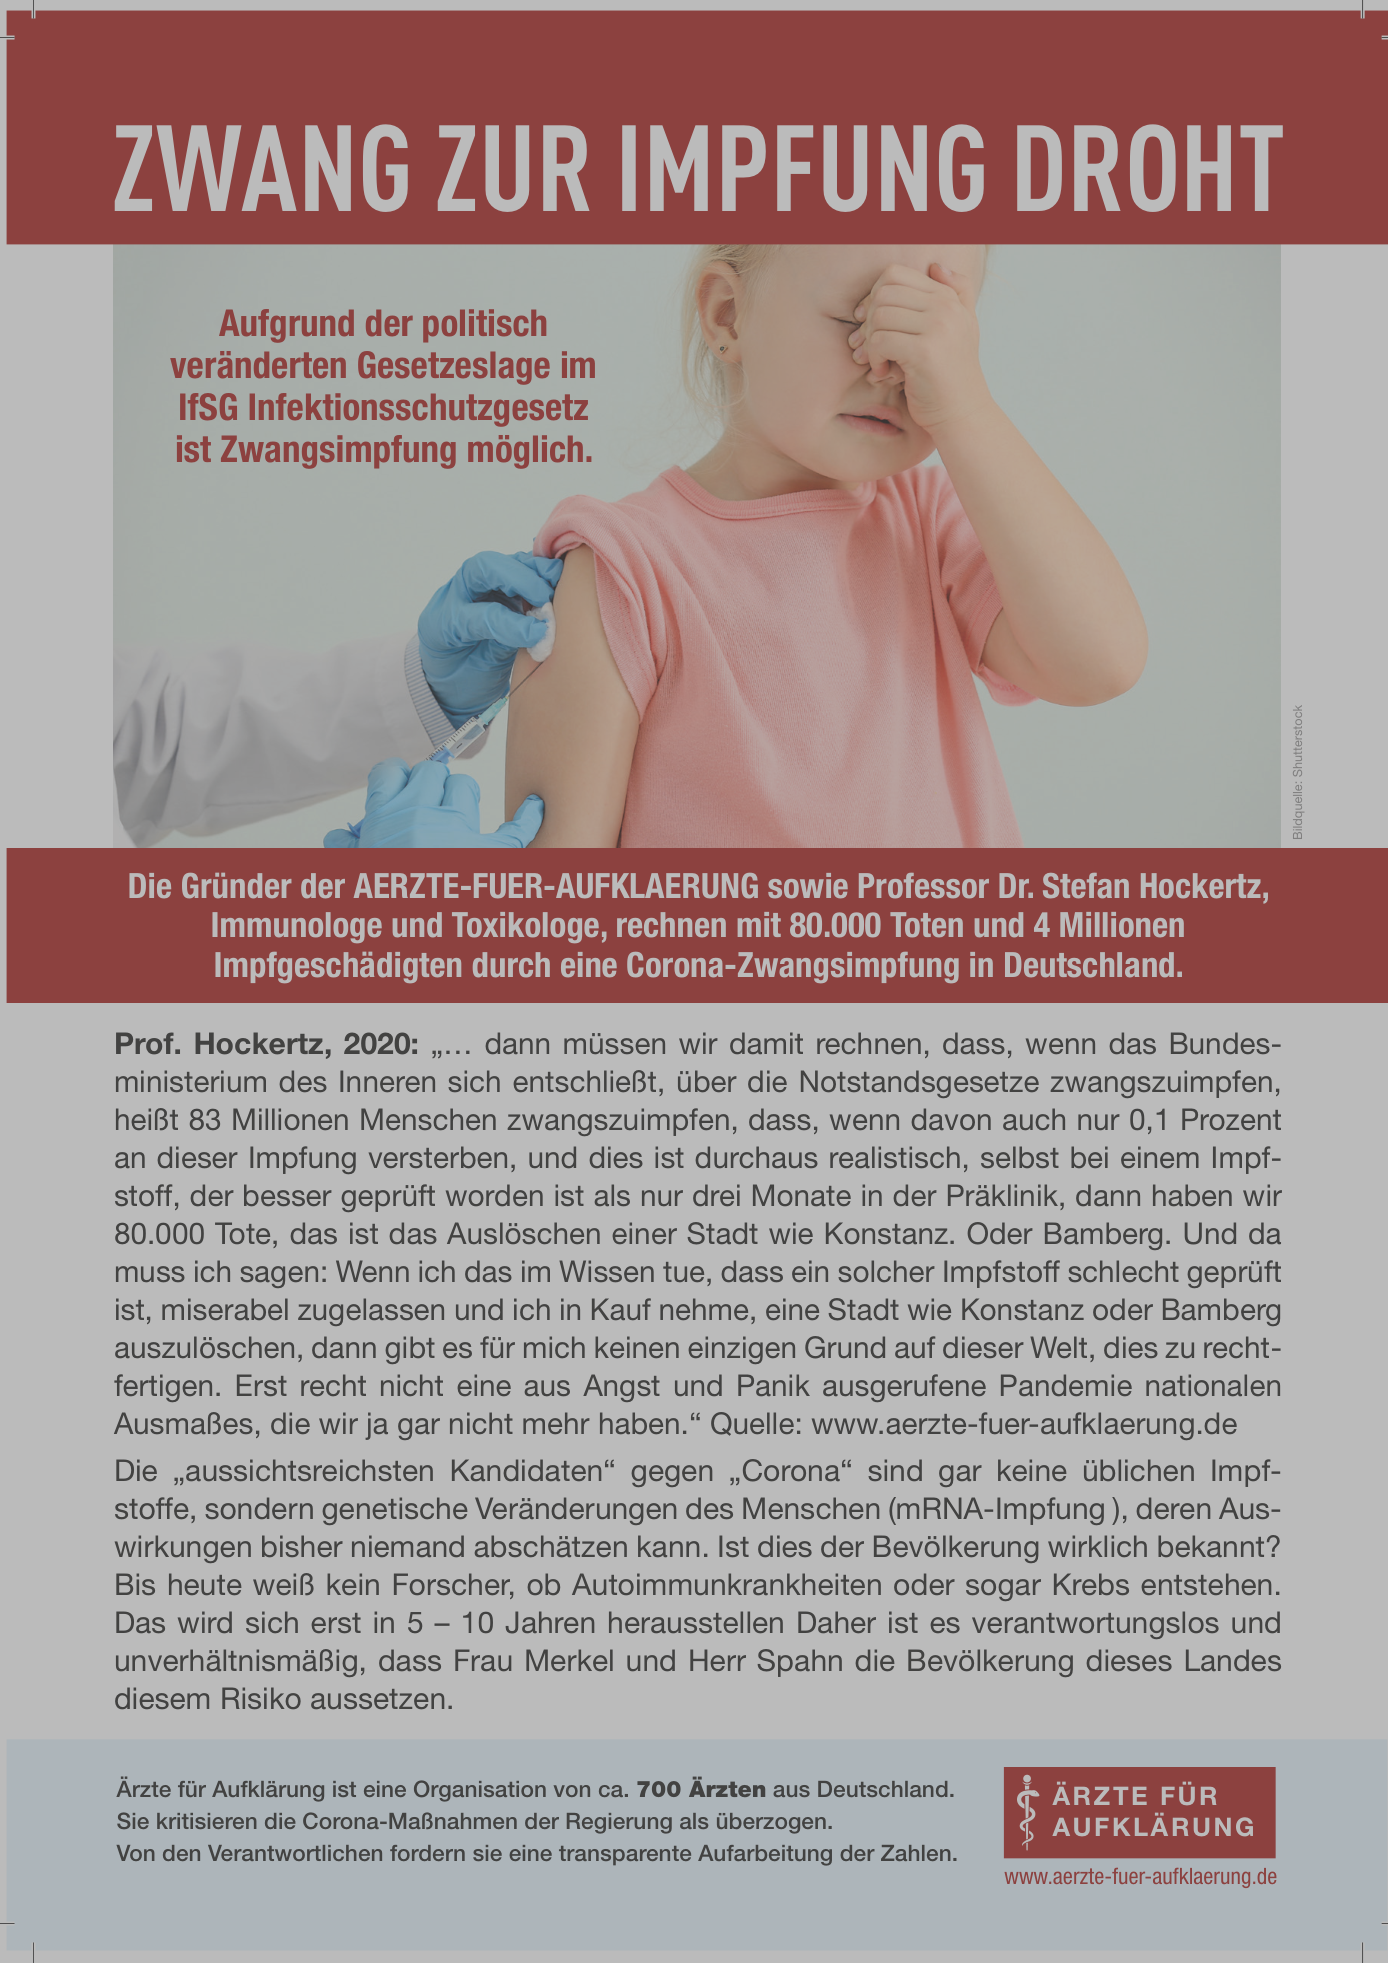 https://fairbeweegung.lu/wp-content/uploads/2022/07/Flyer-Zwang-zur-Impfung-droht